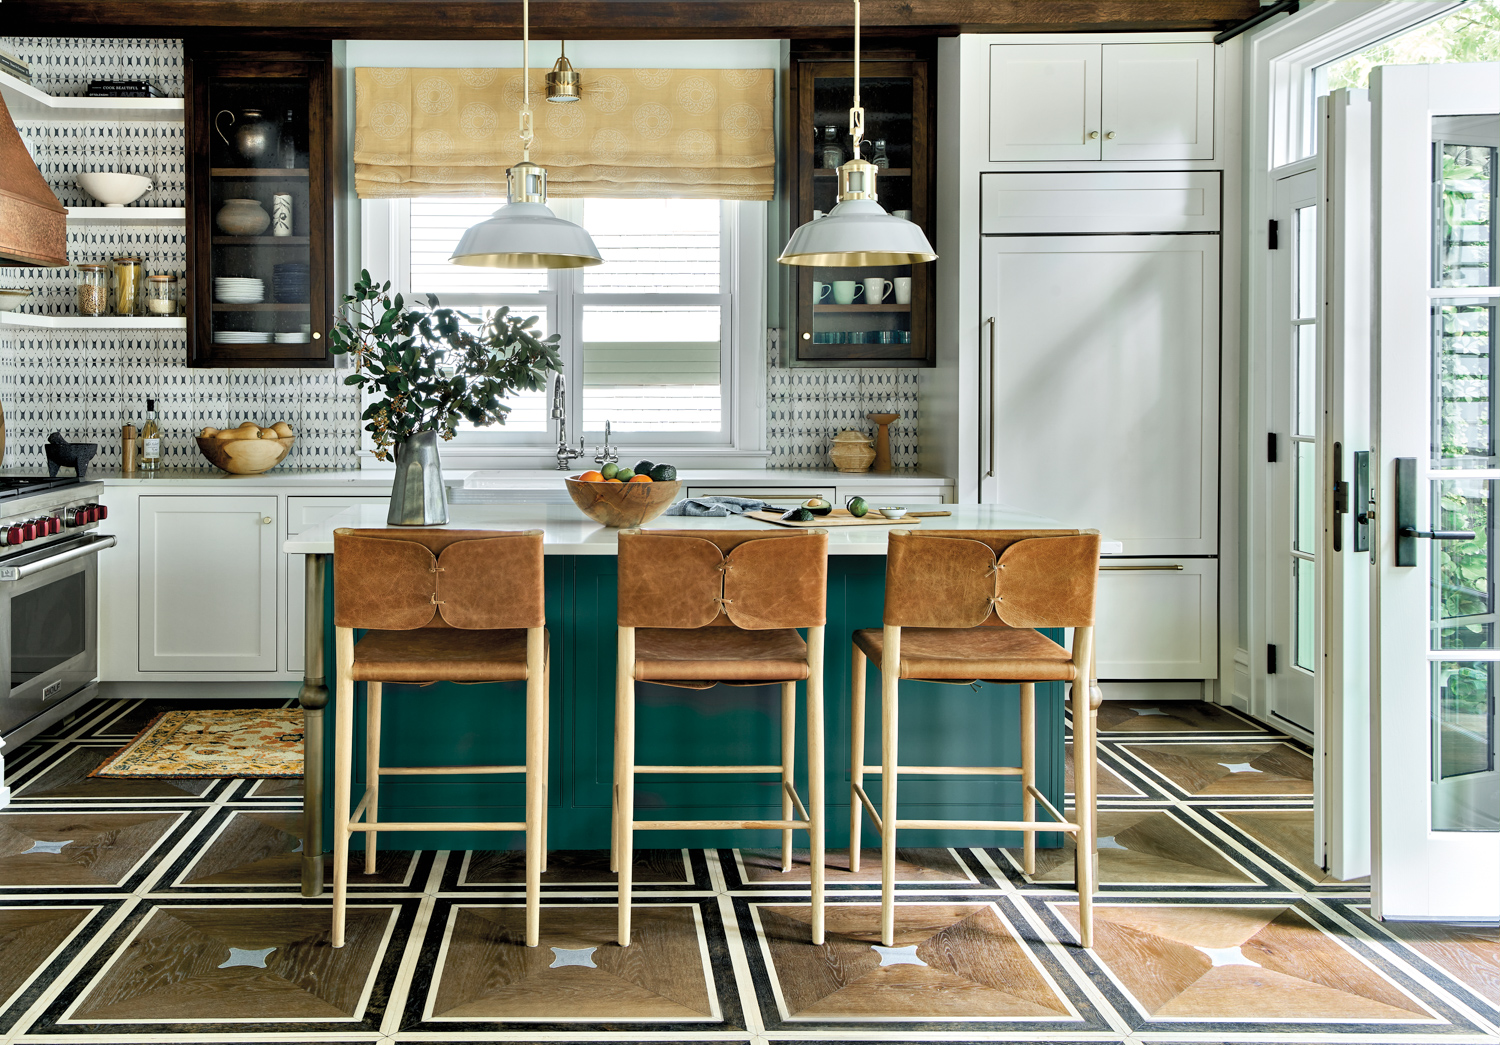 Kitchen with parquet flooring, green...